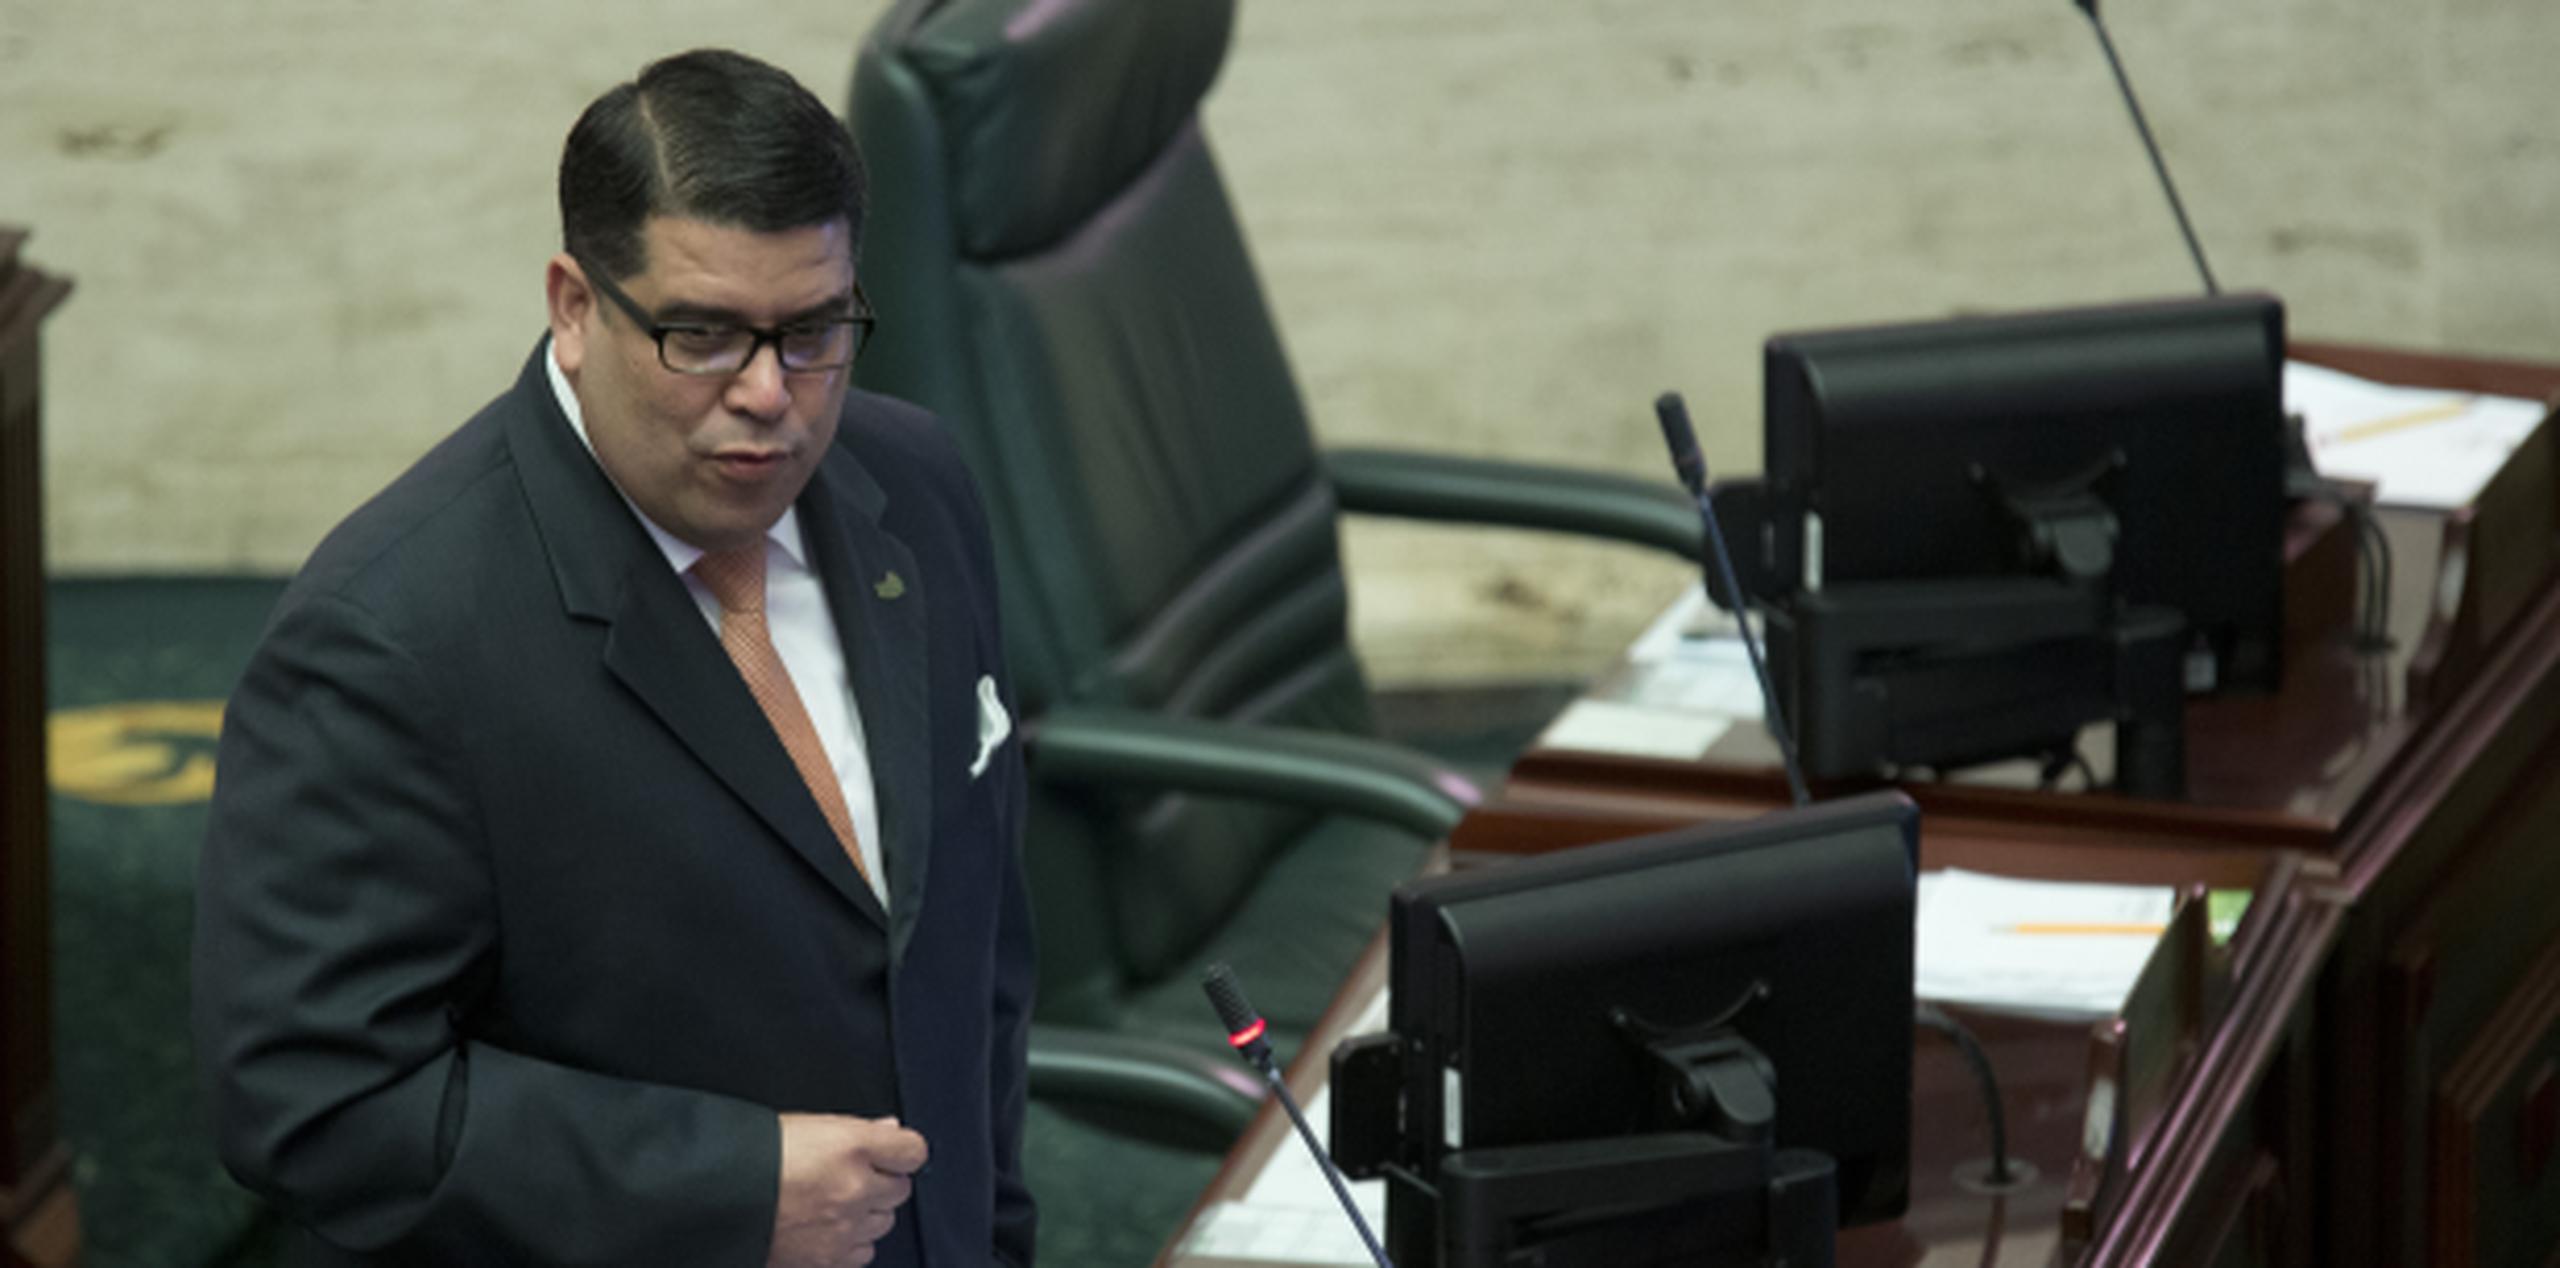 Hernández destacó que el 15% del presupuesto con cargo al Fondo General se destinarán al pago de la deuda pública. (teresa.canion@gfrmedia.com)